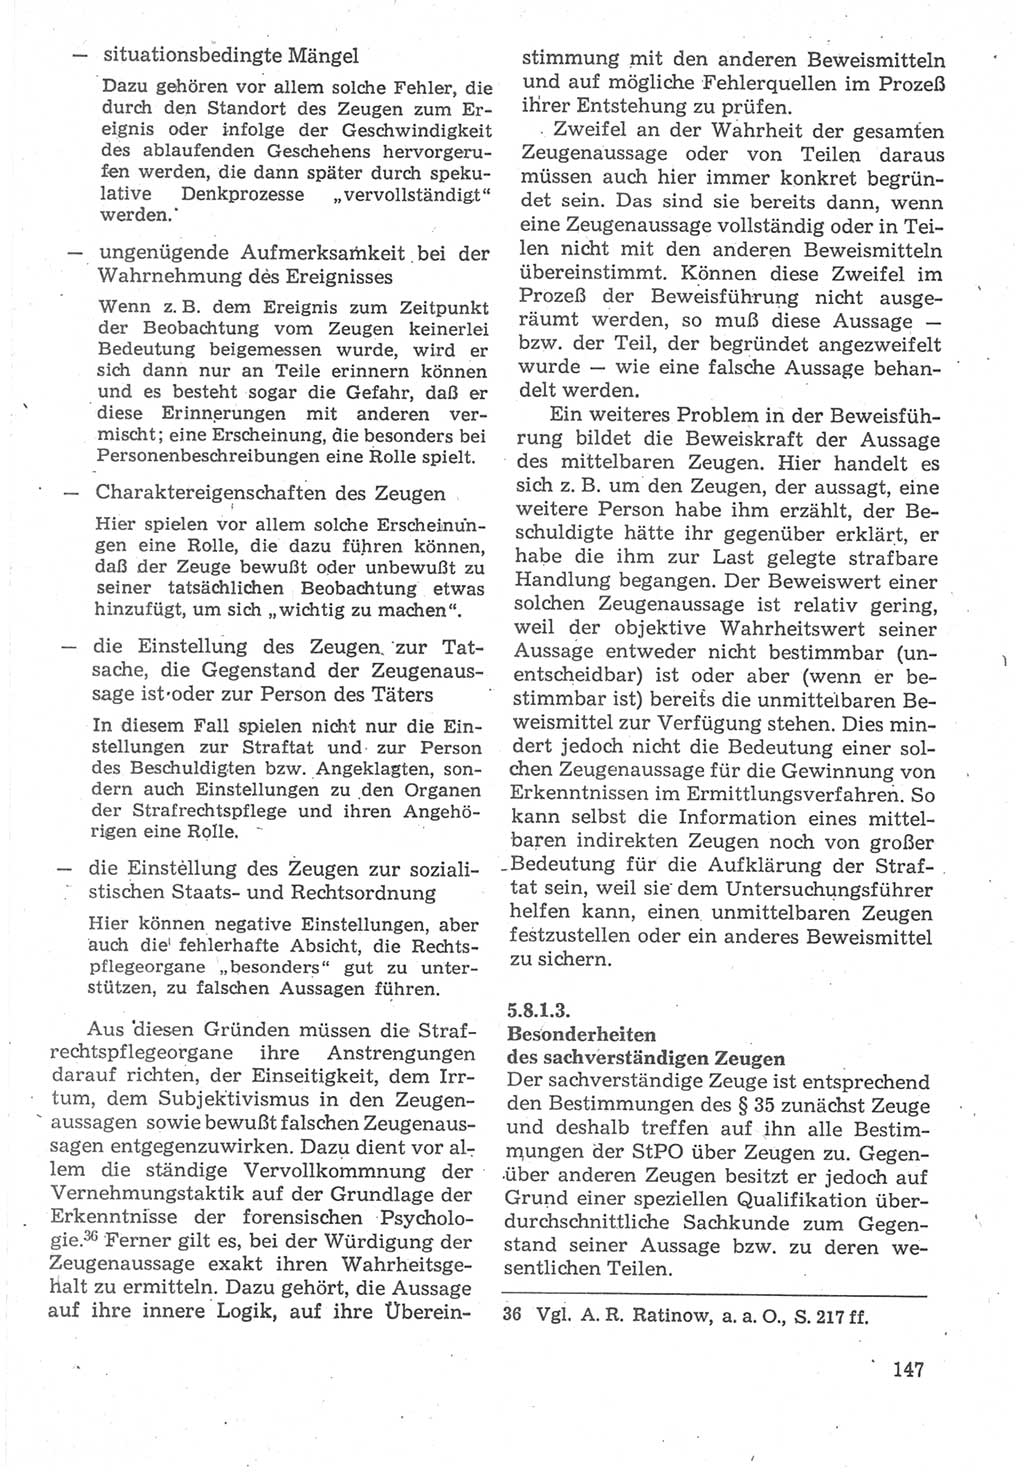 Strafverfahrensrecht [Deutsche Demokratische Republik (DDR)], Lehrbuch 1987, Seite 147 (Strafverf.-R. DDR Lb. 1987, S. 147)